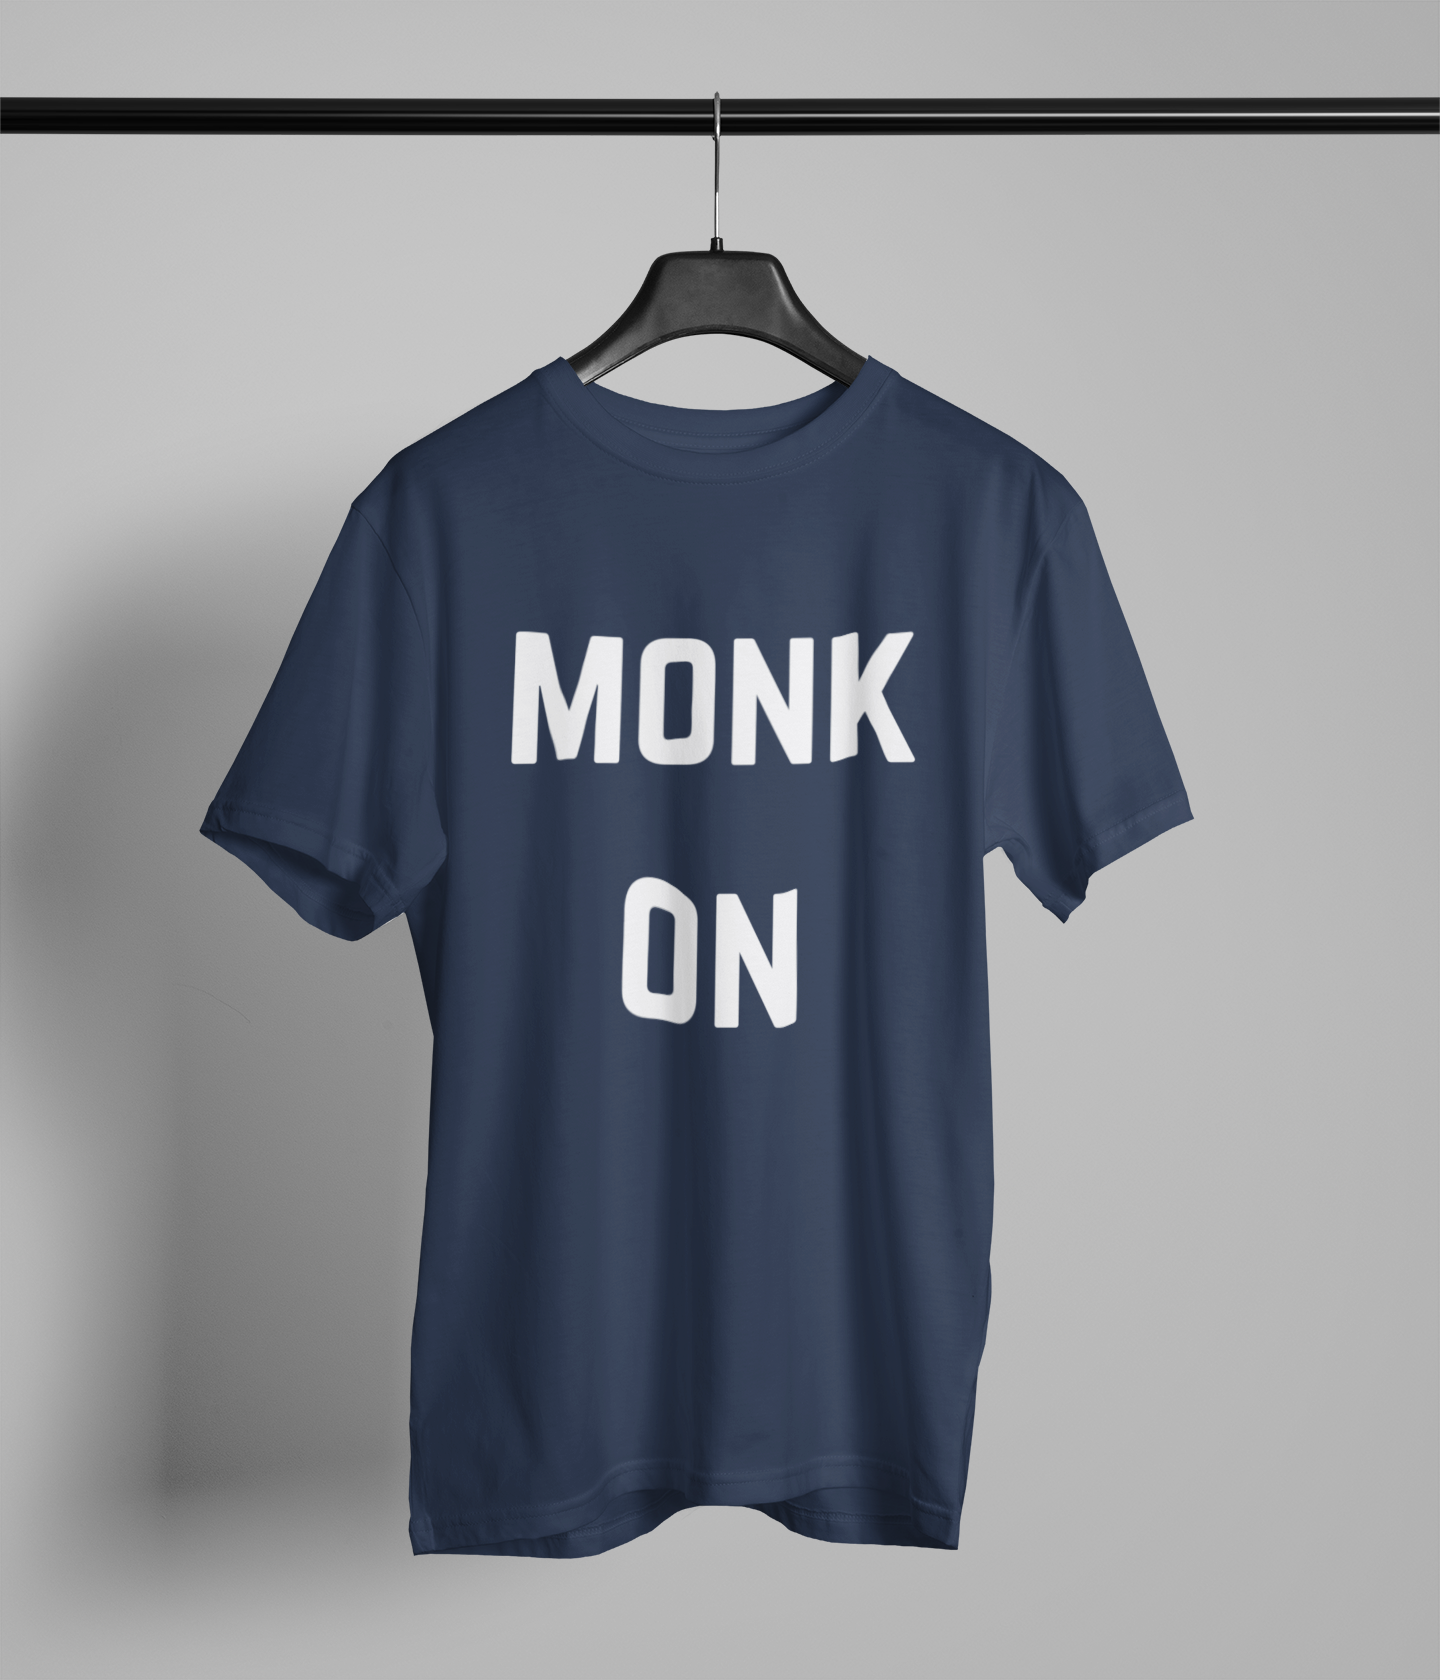 MONK ON Northern Slang T-Shirt